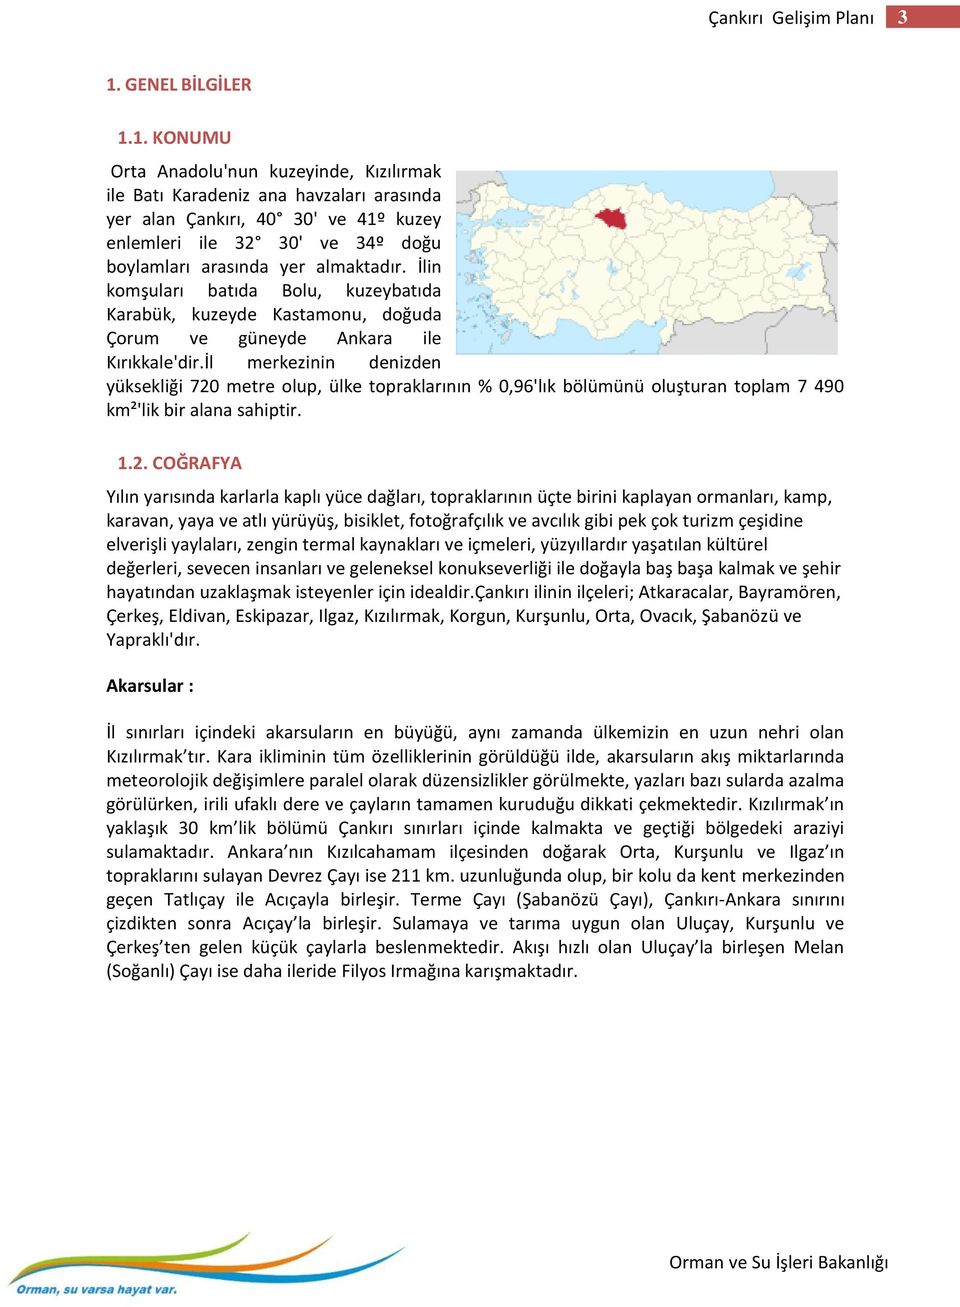 1. KONUMU Orta Anadolu'nun kuzeyinde, Kızılırmak ile Batı Karadeniz ana havzaları arasında yer alan Çankırı, 40 30' ve 41º kuzey enlemleri ile 32 30' ve 34º doğu boylamları arasında yer almaktadır.